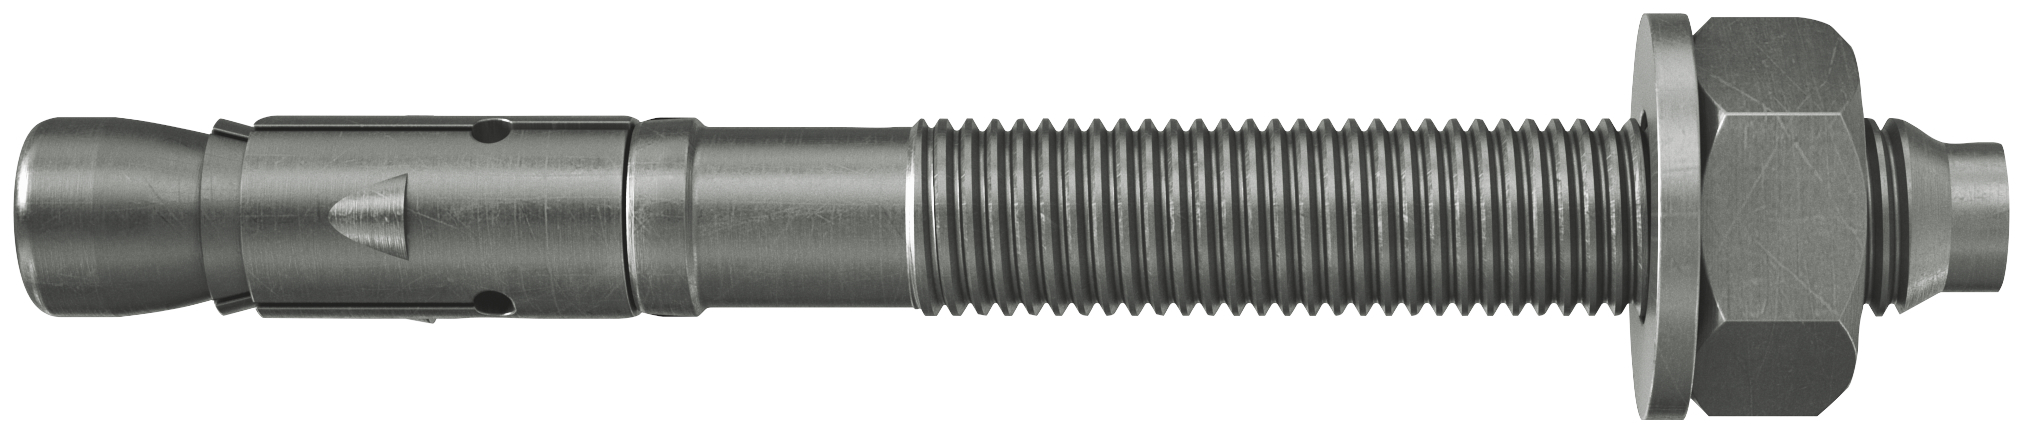 fischer Tassello acciaio FAZ II 10/50 A4 (20 Pz.) L'ancorante ad espansione ad alte prestazioni per carichi statici su calcestruzzo fessurato e per applicazioni sismiche. Versione in acciaio inossidabile con classe di resistenza alla corrosione CRC III..